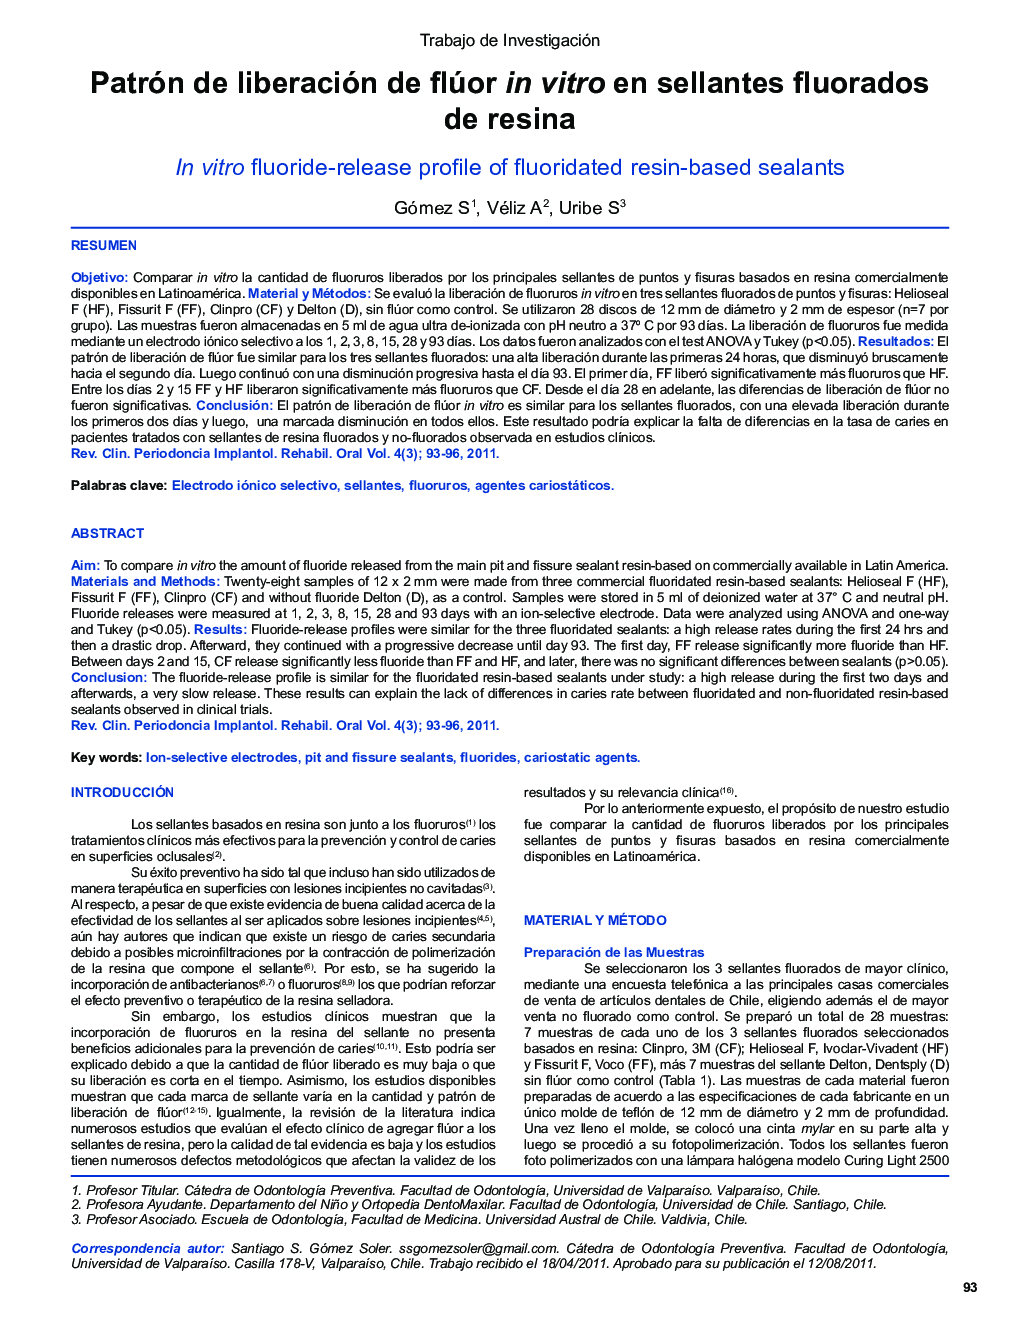 Patrón de liberación de flúor in vitro en sellantes fluorados de resina